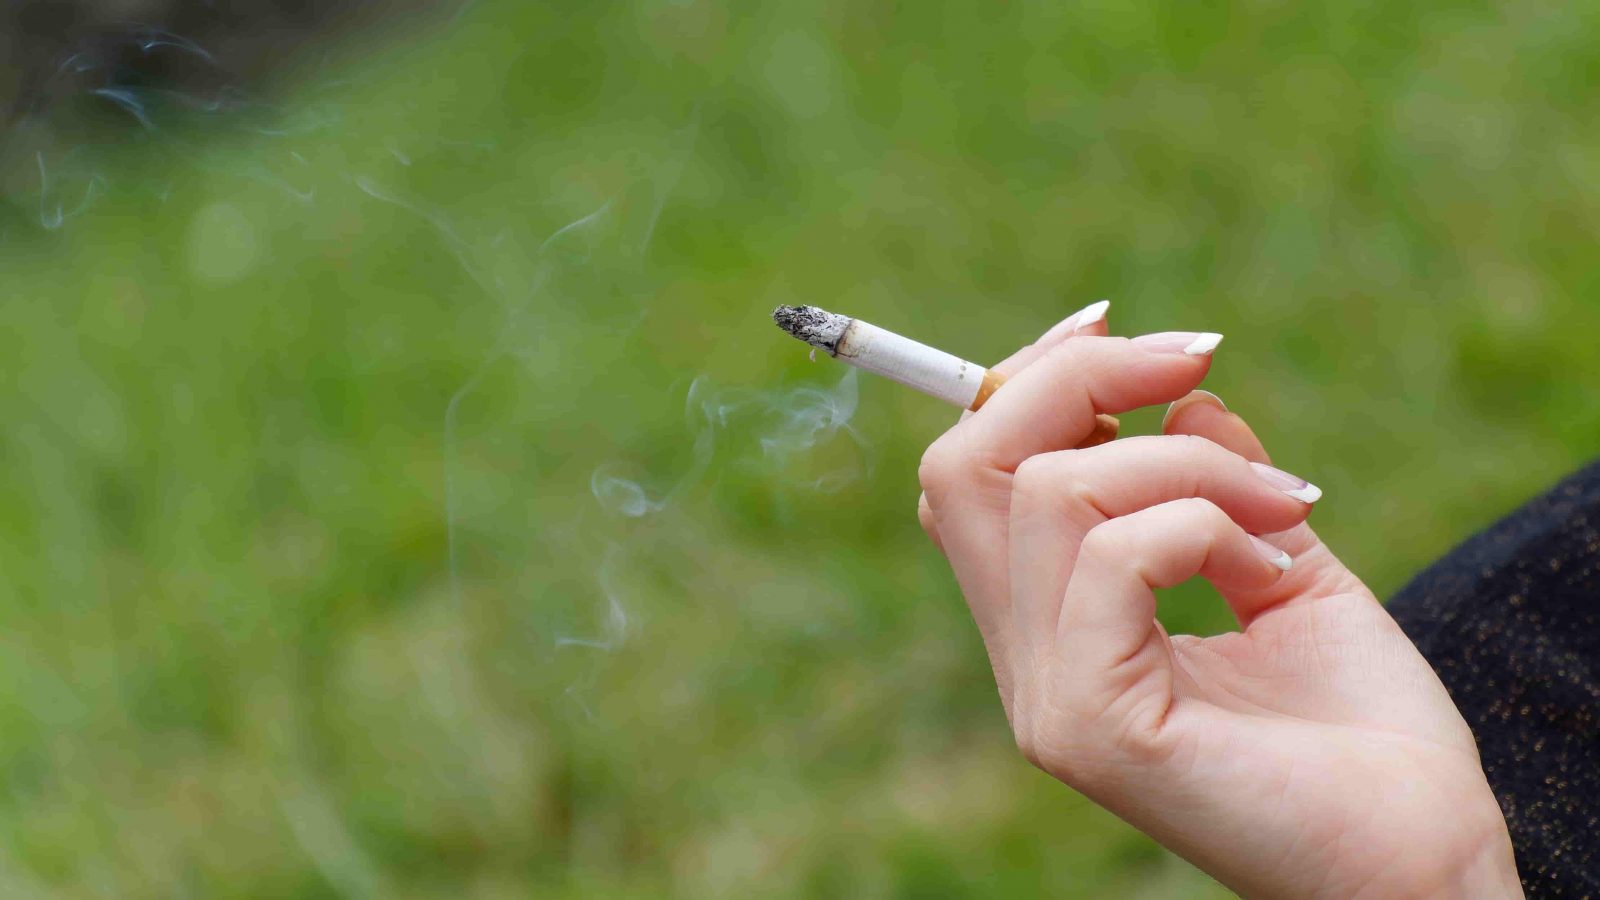 Ta có thể bỏ thuốc lá bằng thôi miên?